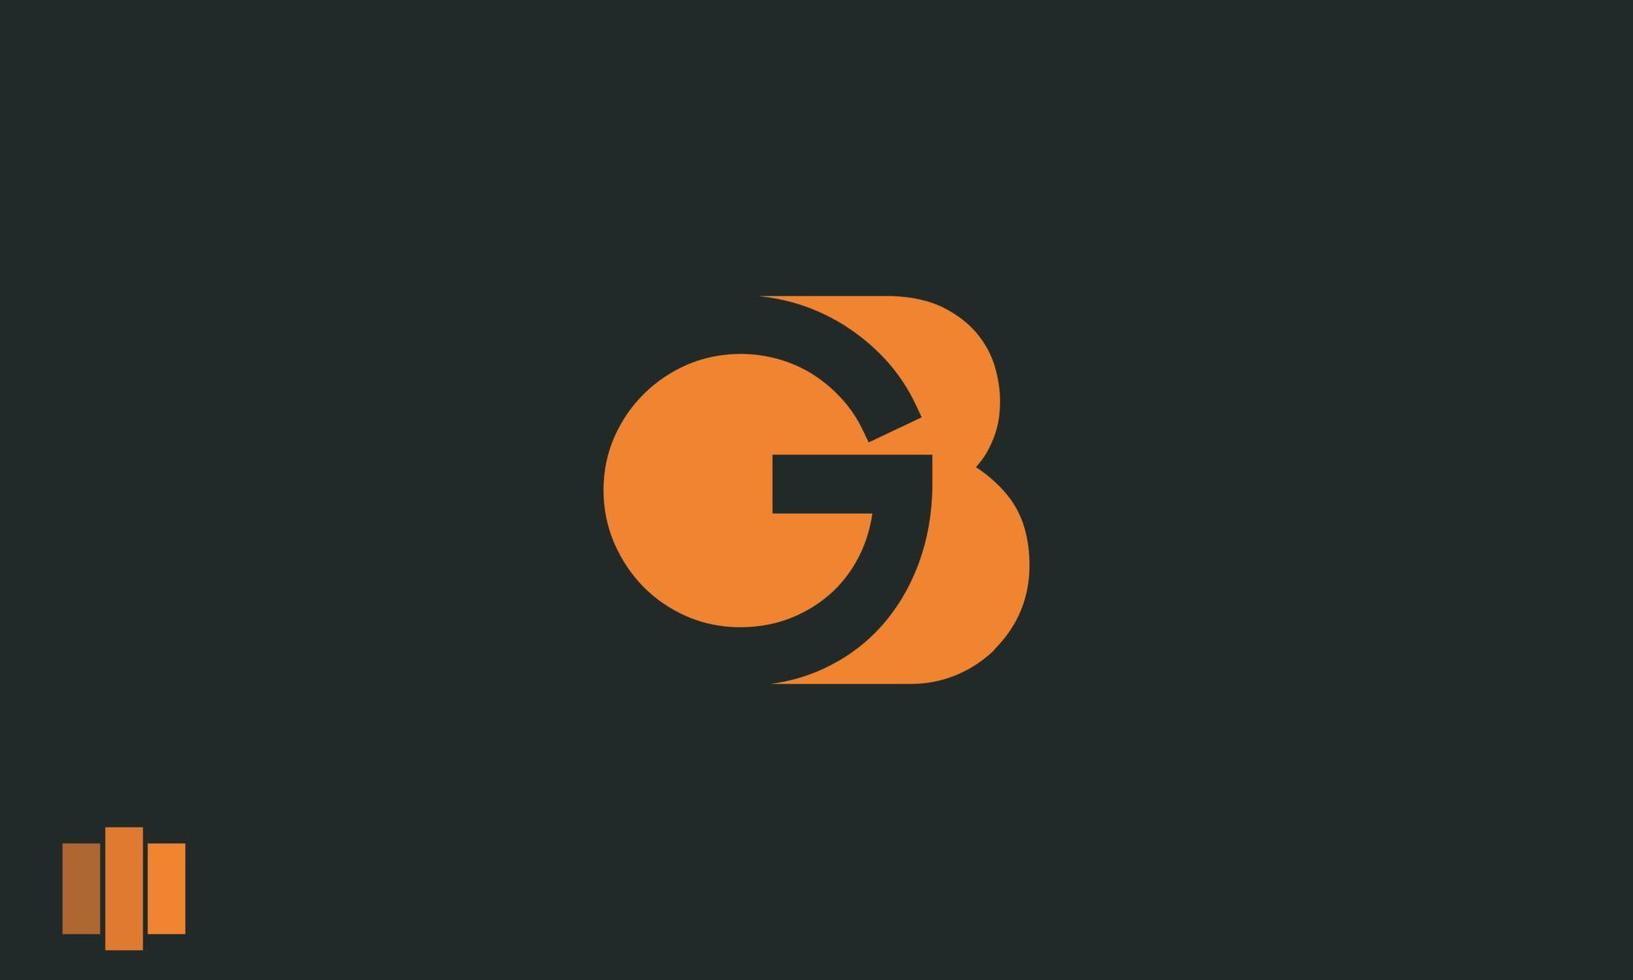 letras do alfabeto iniciais monograma logotipo gb, bg, g e b vetor